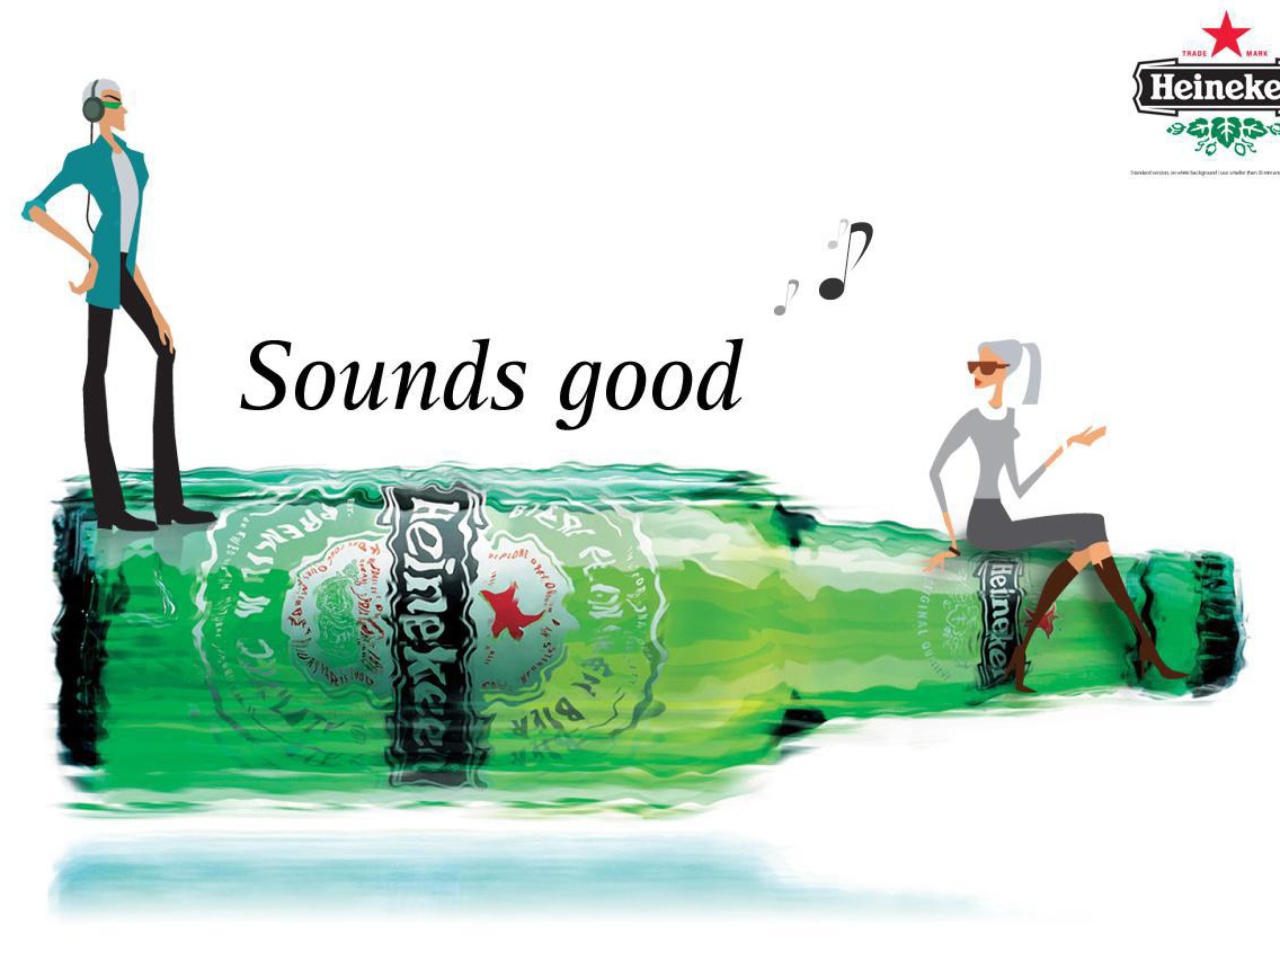 Das Heineken, Sounds good Wallpaper 1280x960